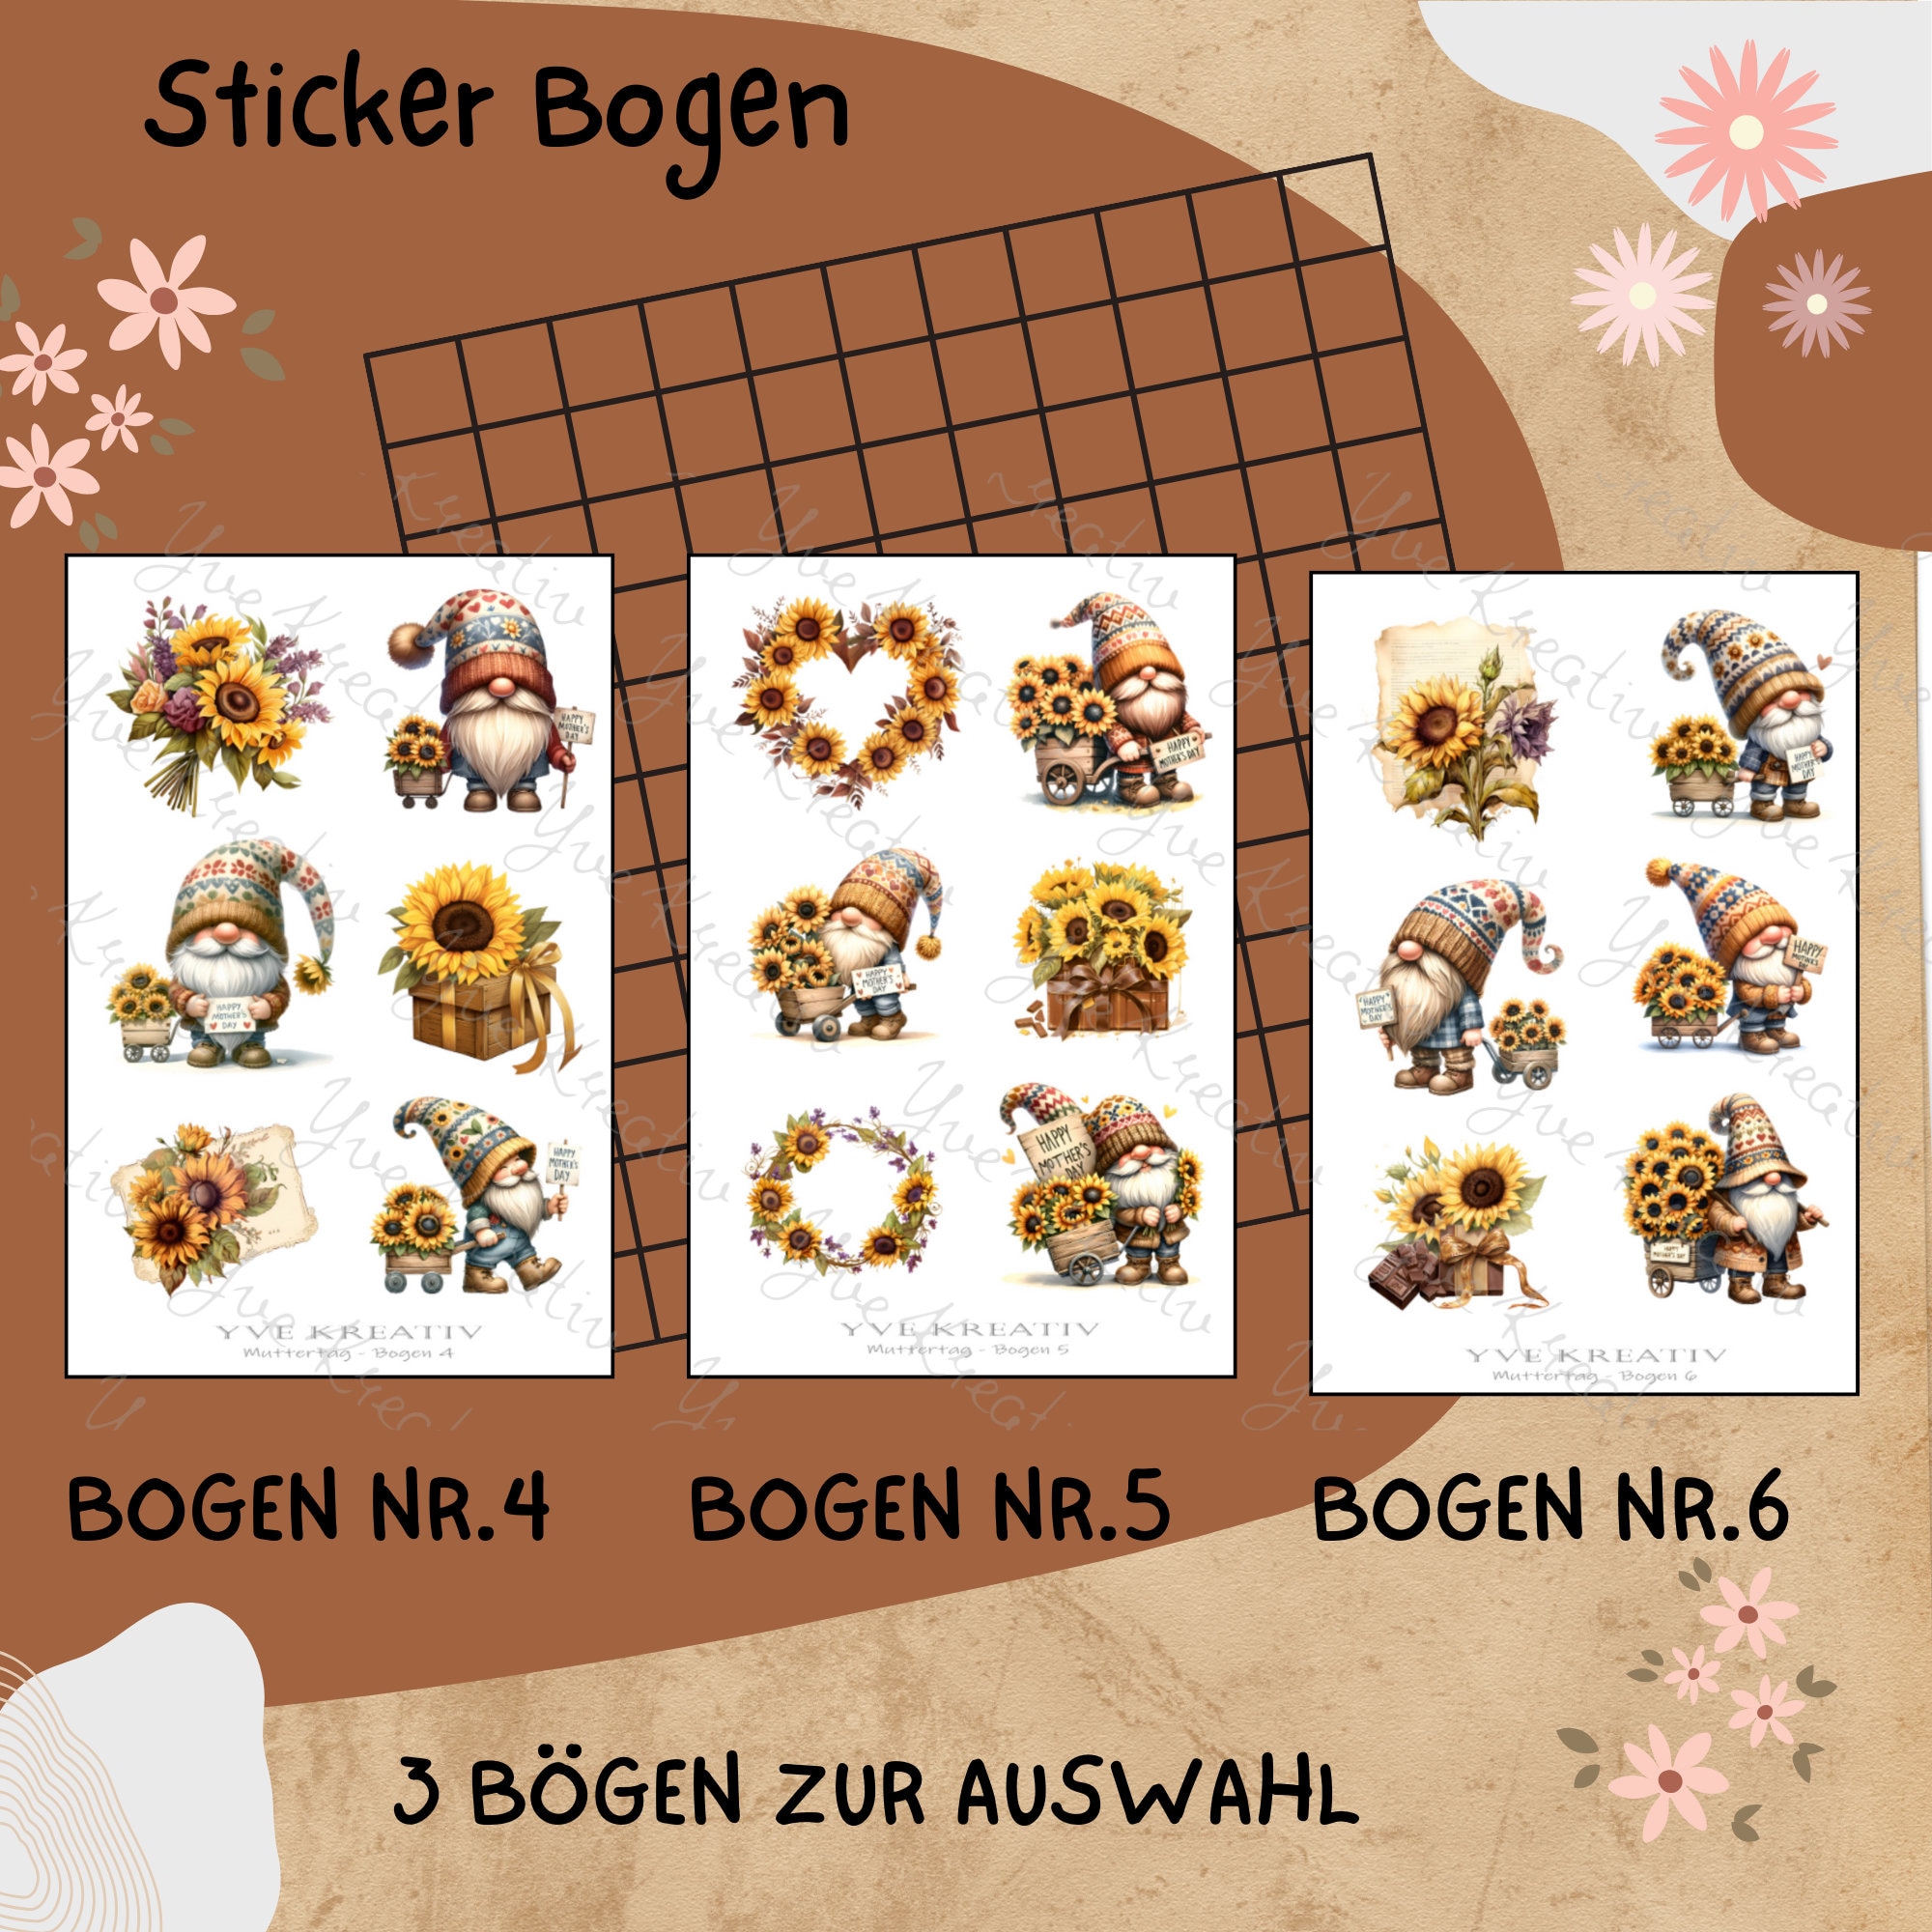 Sticker Bogen "Muttertag Sonnenblumen Wichtel" | Sticker Set - Aufkleber 3 Stickerbogen zur Auswahl in Weiß - Transparent - Matt - Glanz